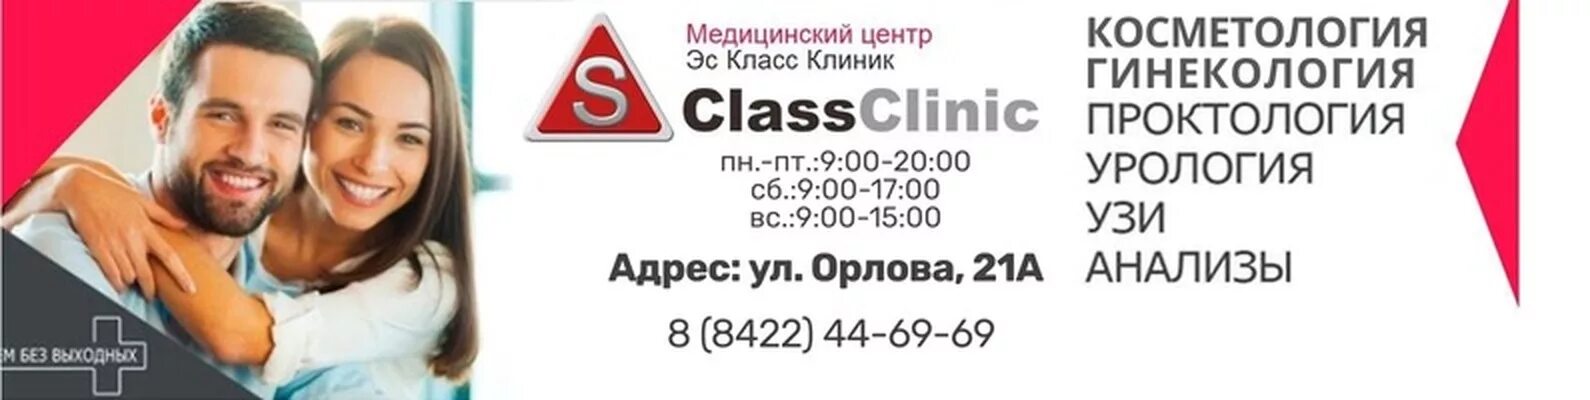 С класс клиник Ульяновск. Скласс клиниг Ульяновск. Экс класс клиника в Ульяновске.